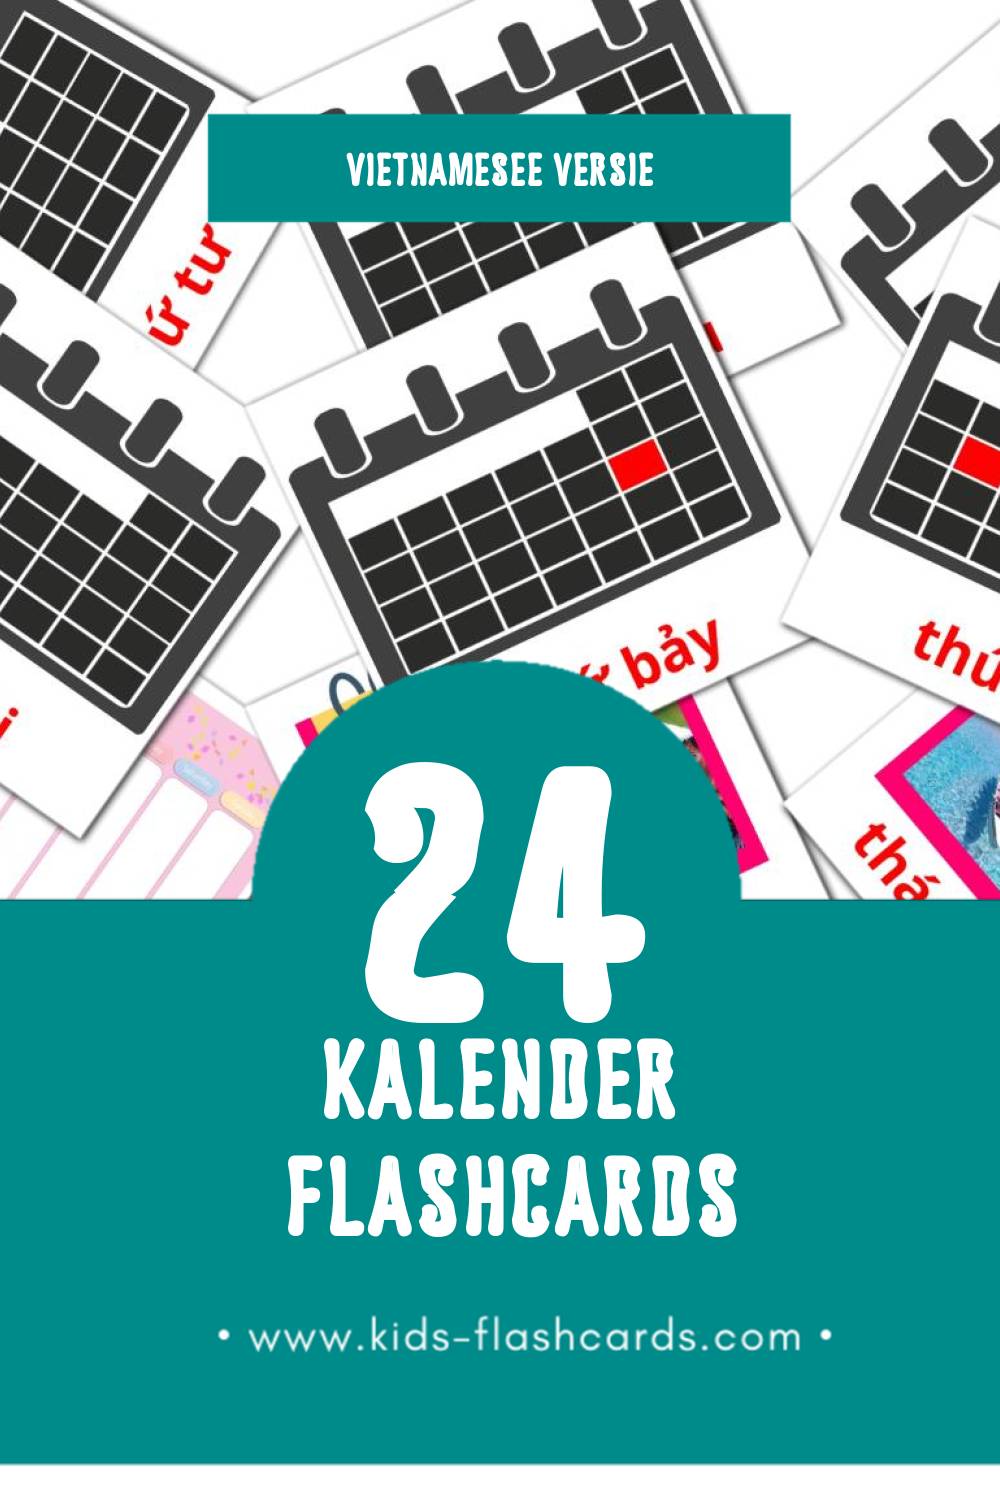 Visuele Lịch Flashcards voor Kleuters (24 kaarten in het Vietnamese)